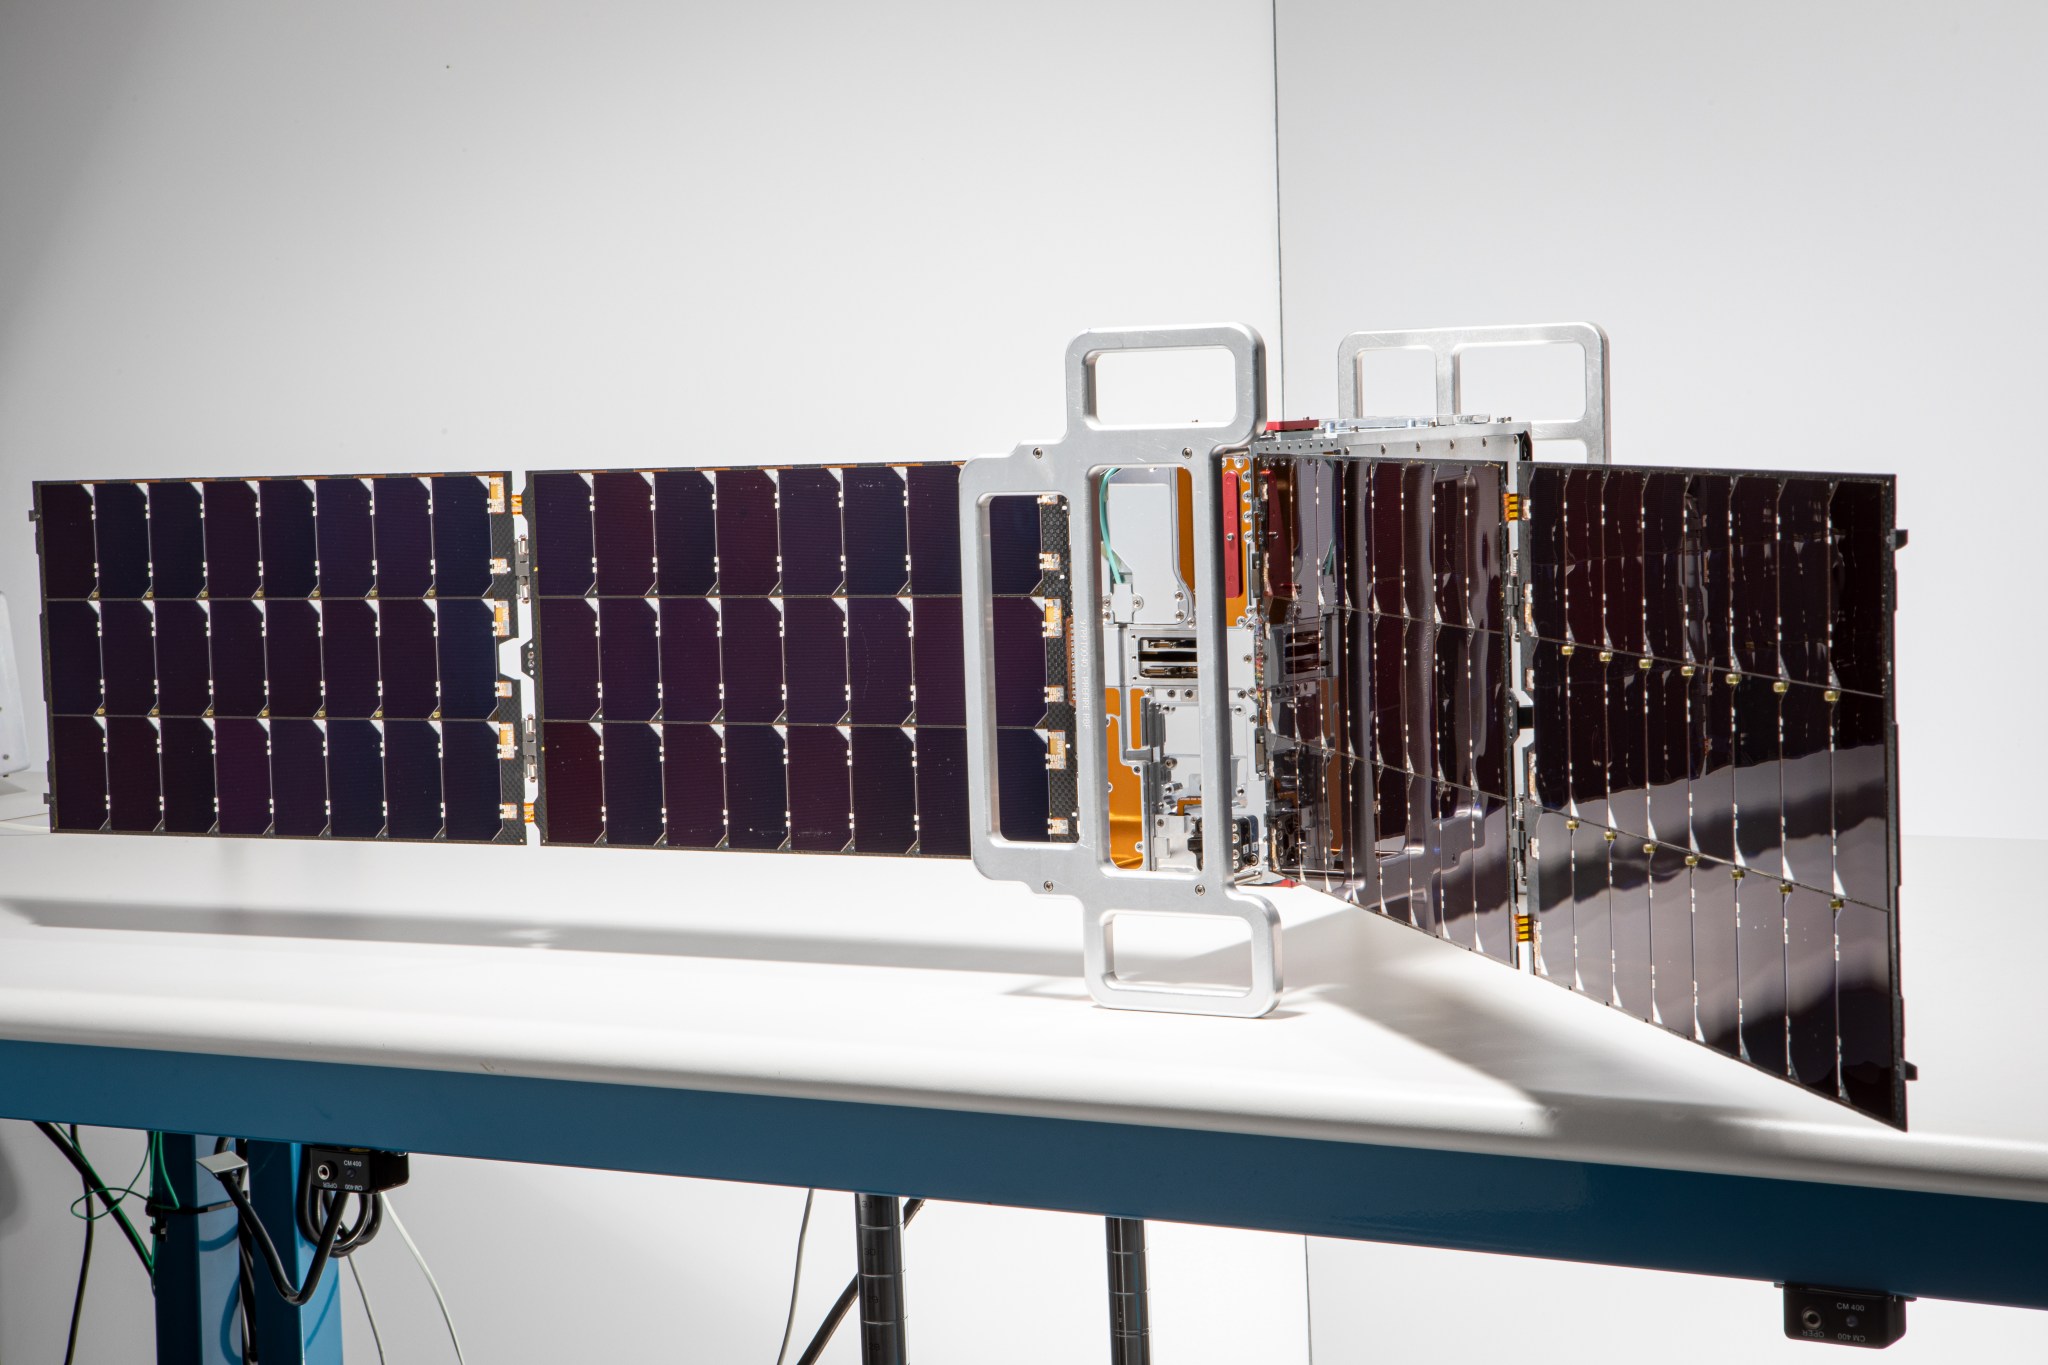 Uno de los dos CubeSats del tamaño de una caja de zapatos que componen la misión PREFIRE de la NASA